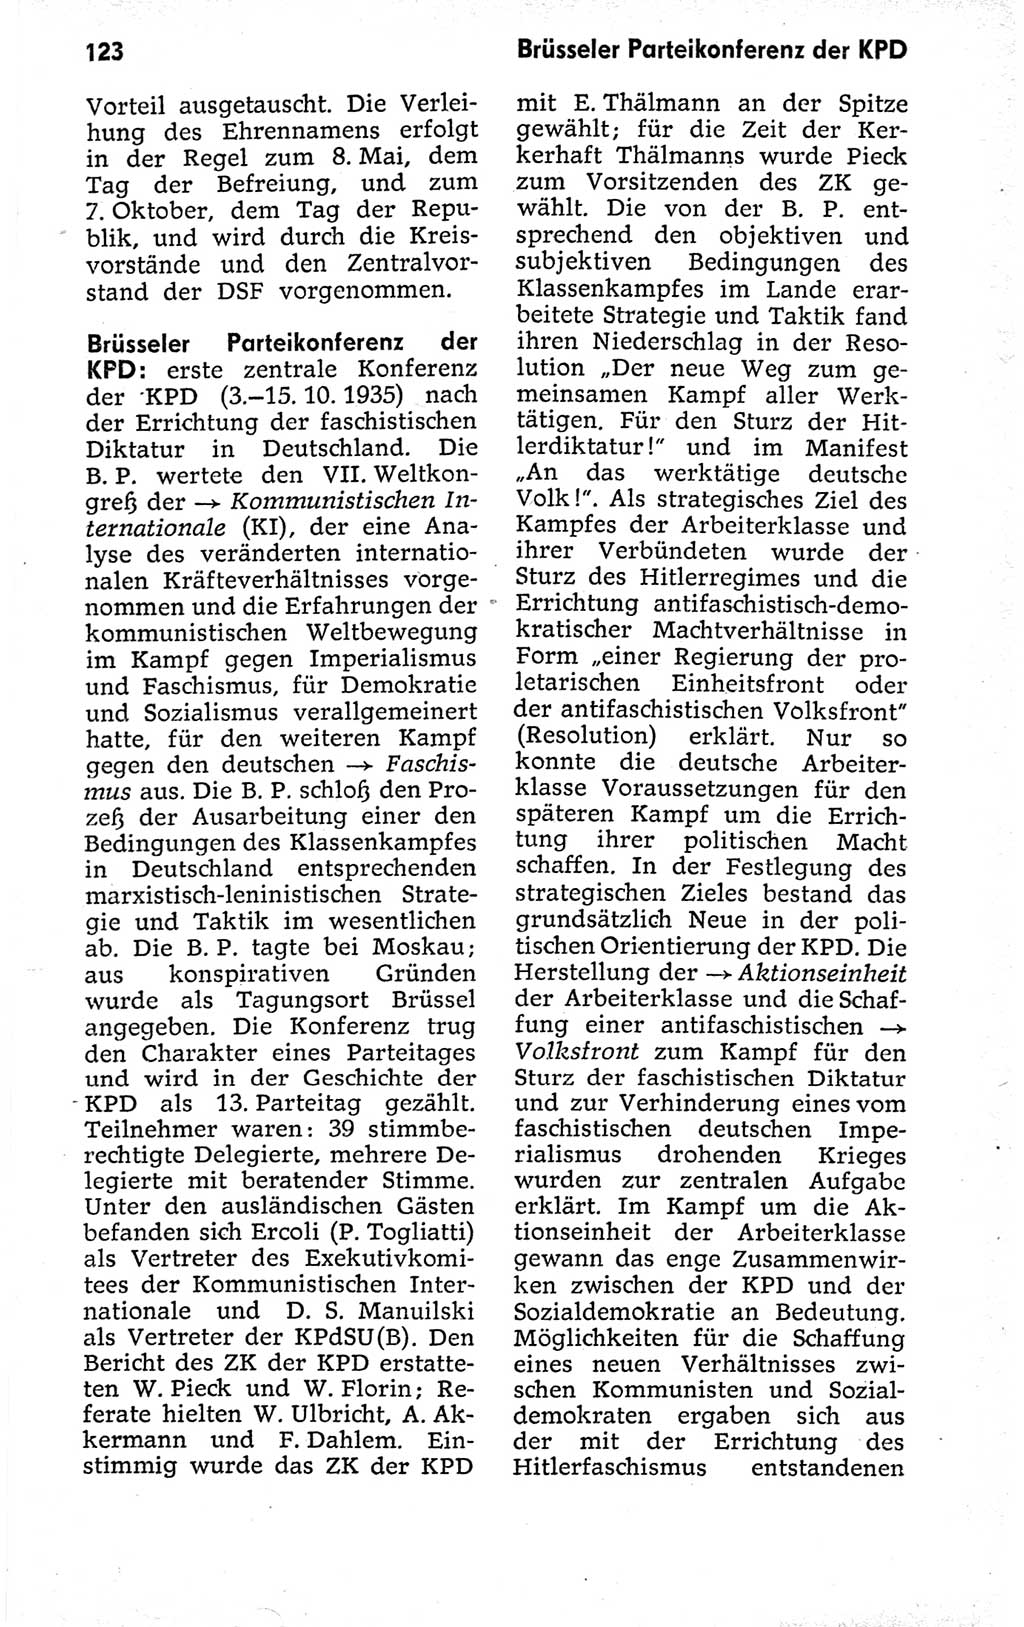 Kleines politisches Wörterbuch [Deutsche Demokratische Republik (DDR)] 1973, Seite 123 (Kl. pol. Wb. DDR 1973, S. 123)